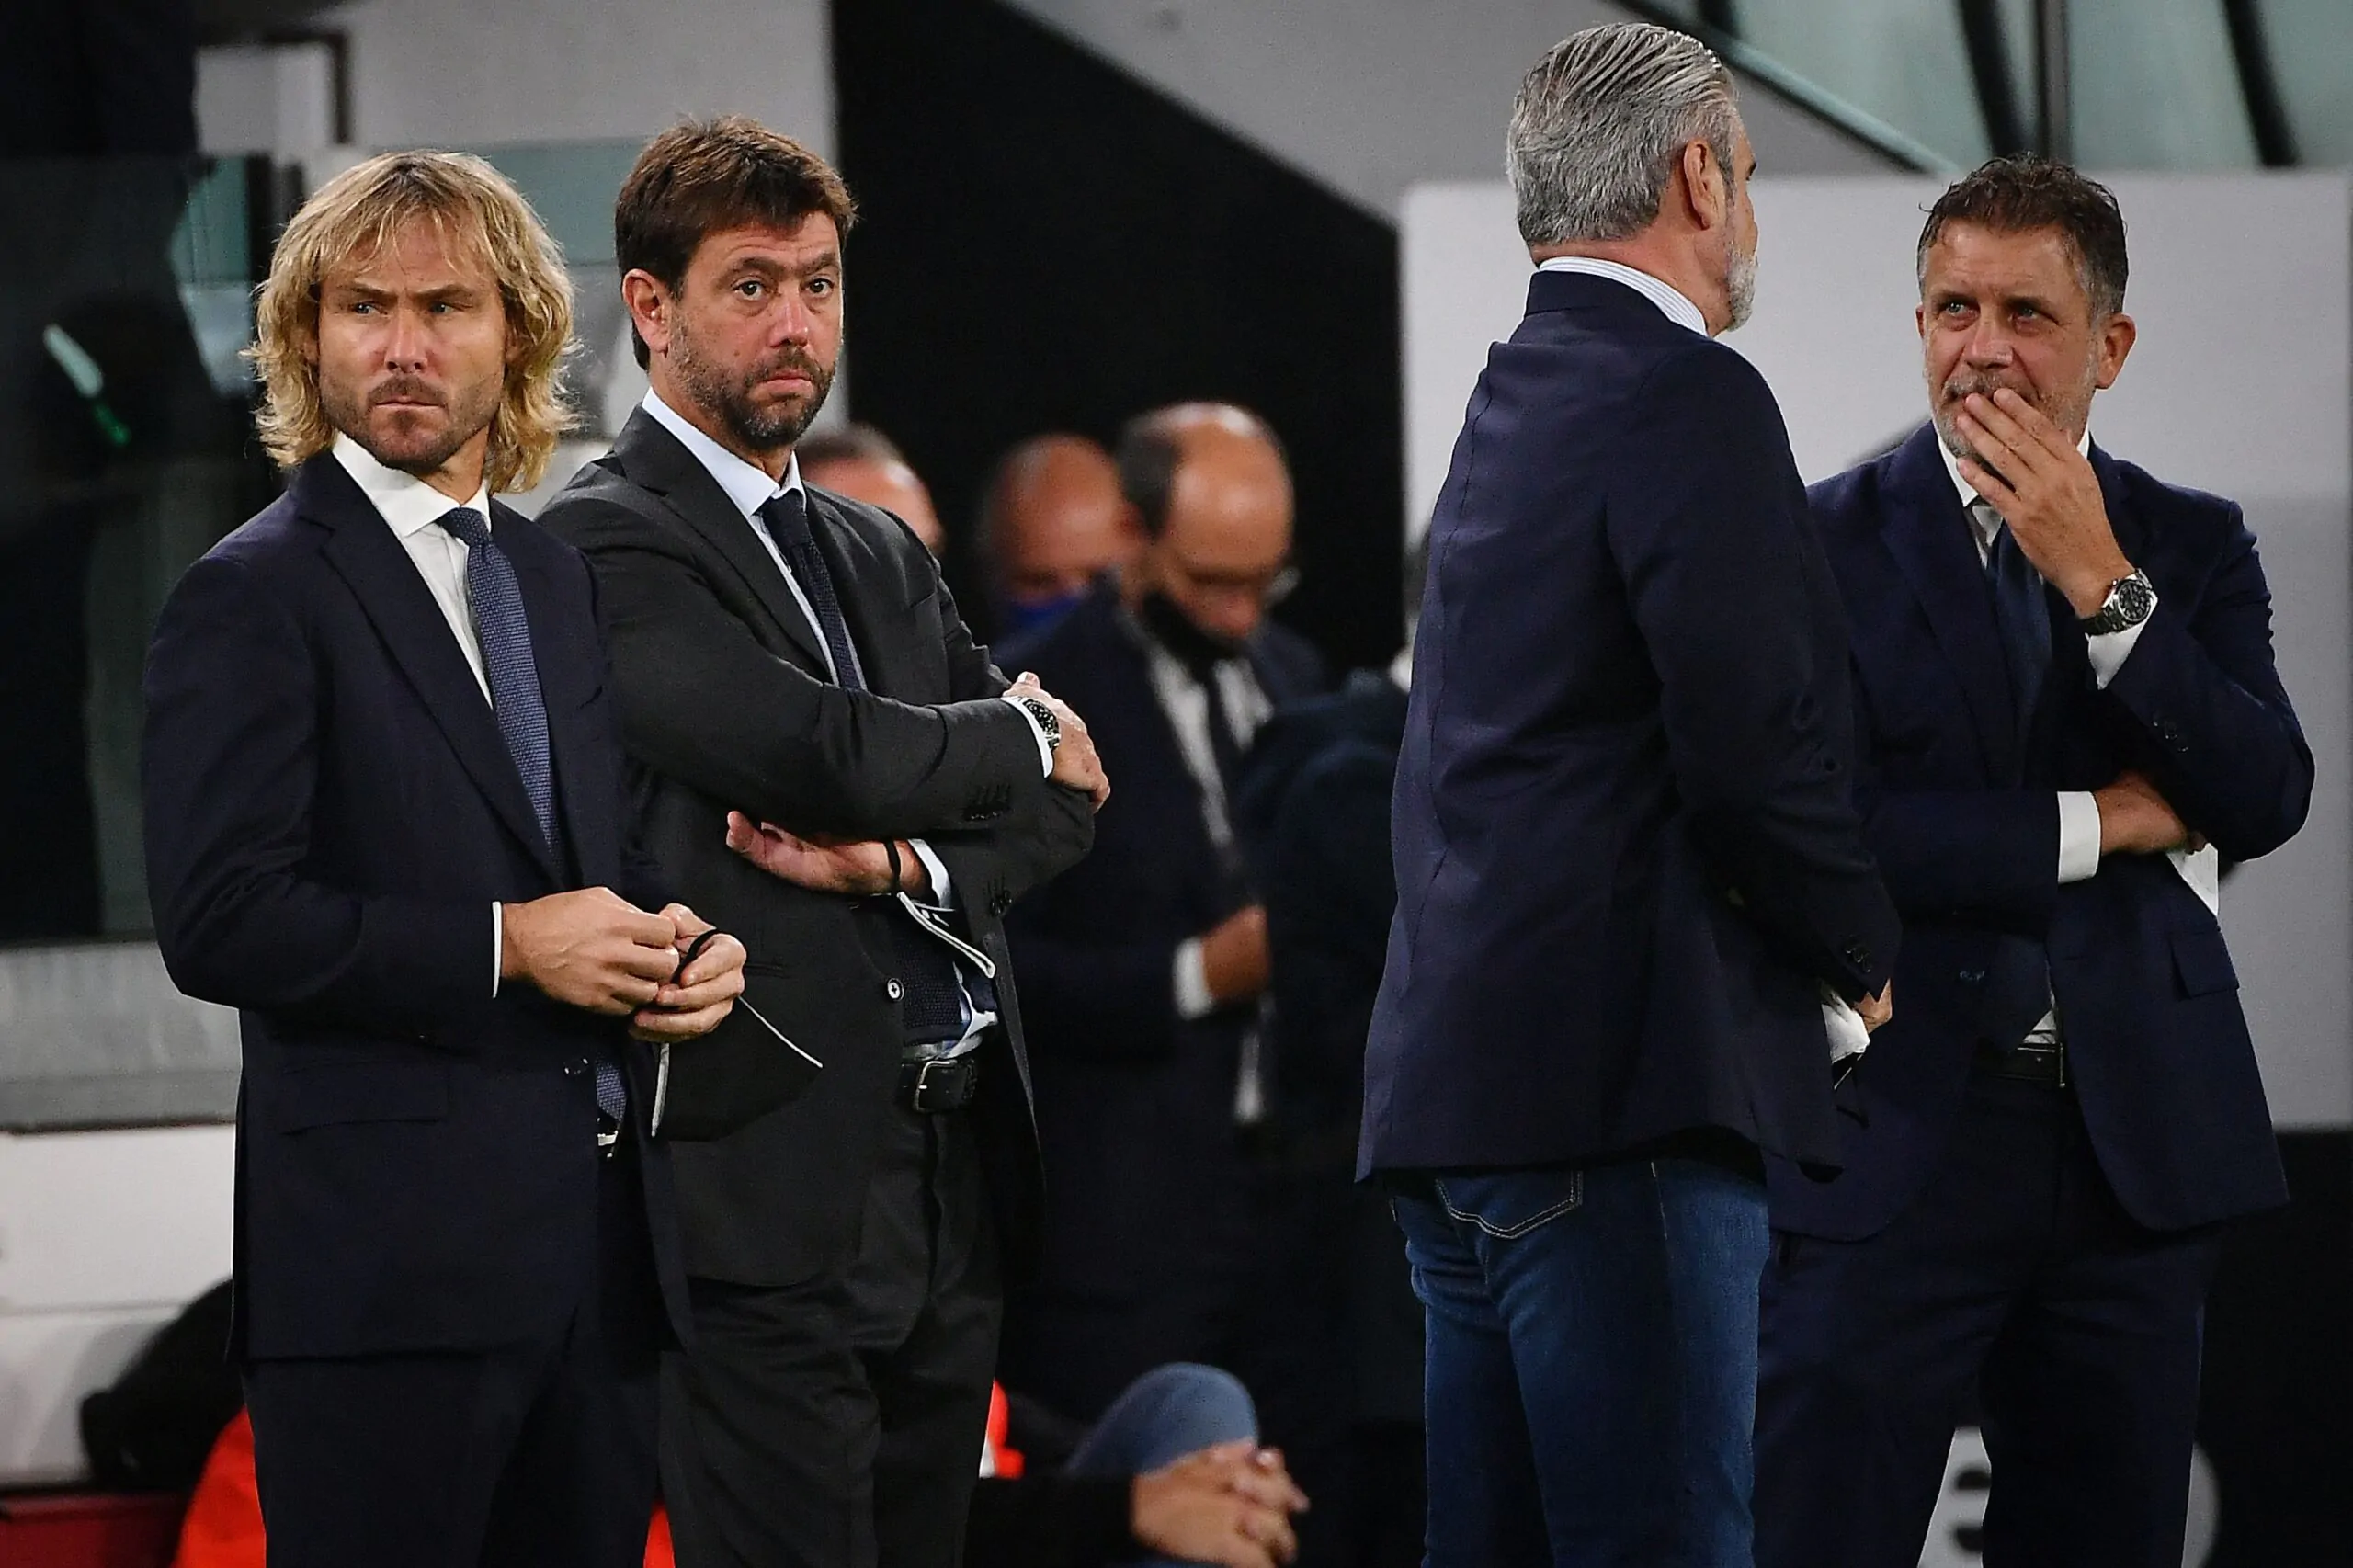 Il giornalista attacca la Juventus: “Dovrebbero revocare due stelle”